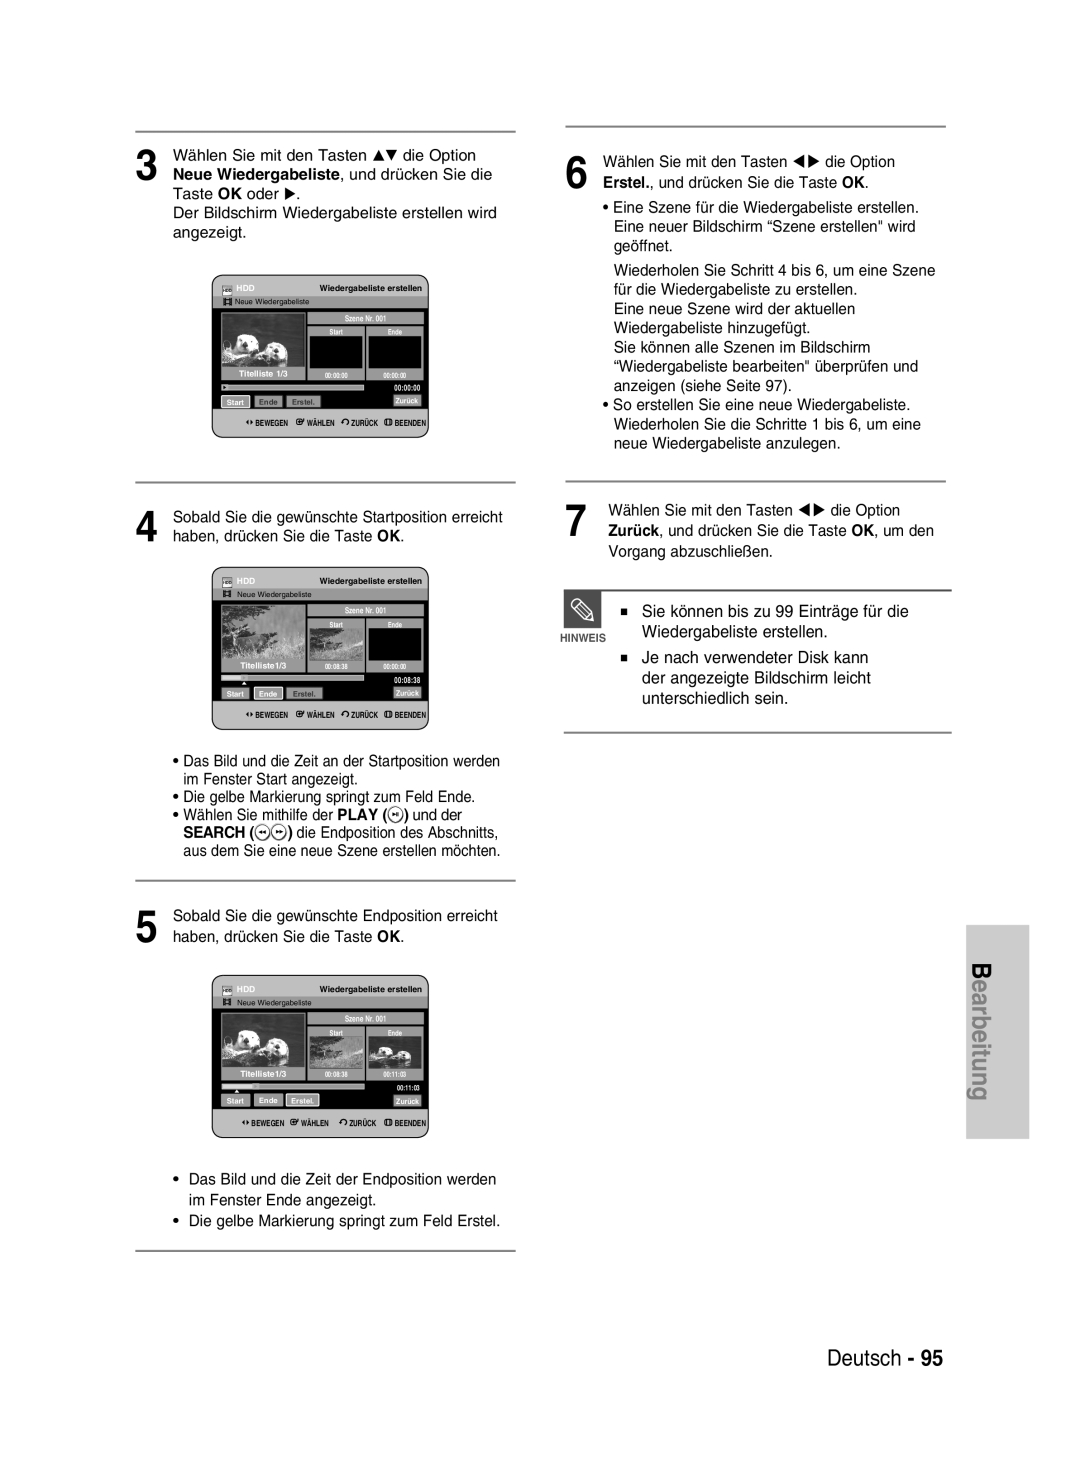 Samsung DVD-HR730/XEG manual Bearbeitung, Deutsch, Sie können bis zu 99 Einträge für die, Wiedergabeliste erstellen 